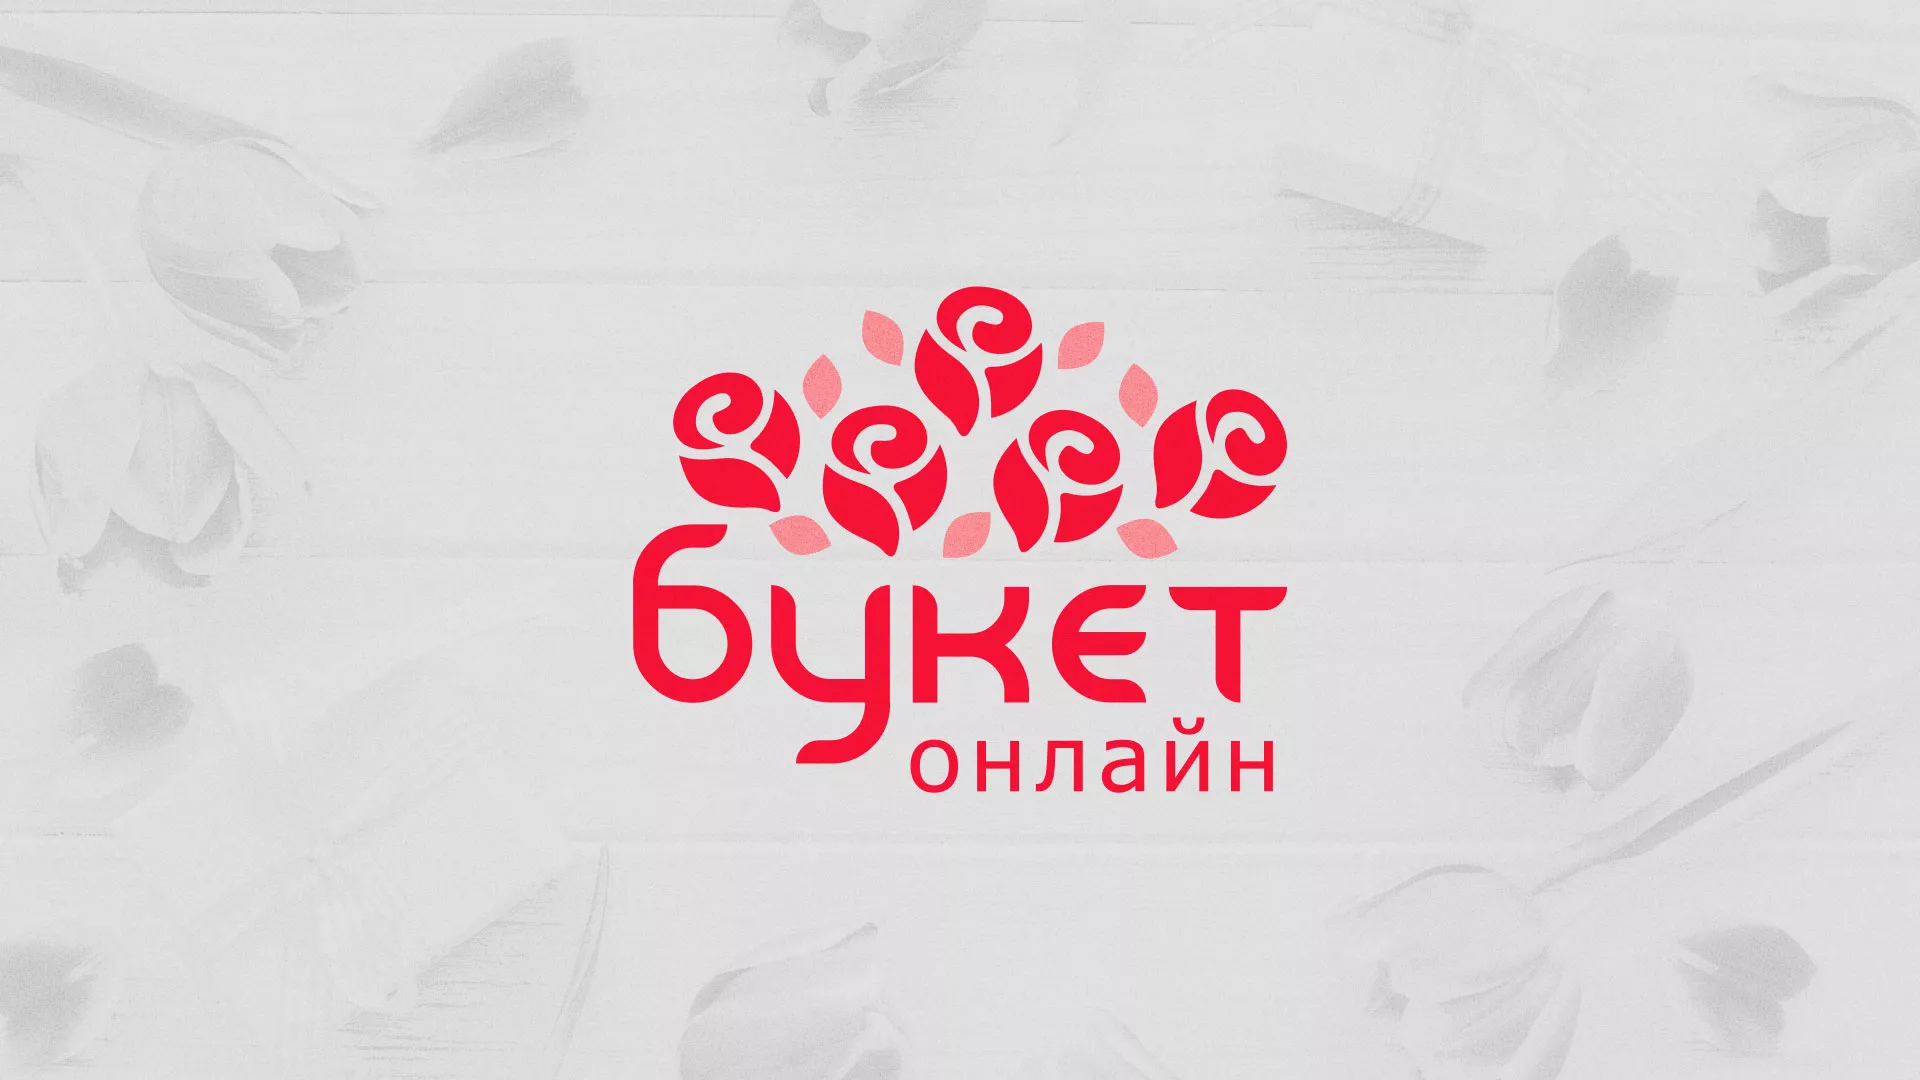 Создание интернет-магазина «Букет-онлайн» по цветам в Юрьев-Польском